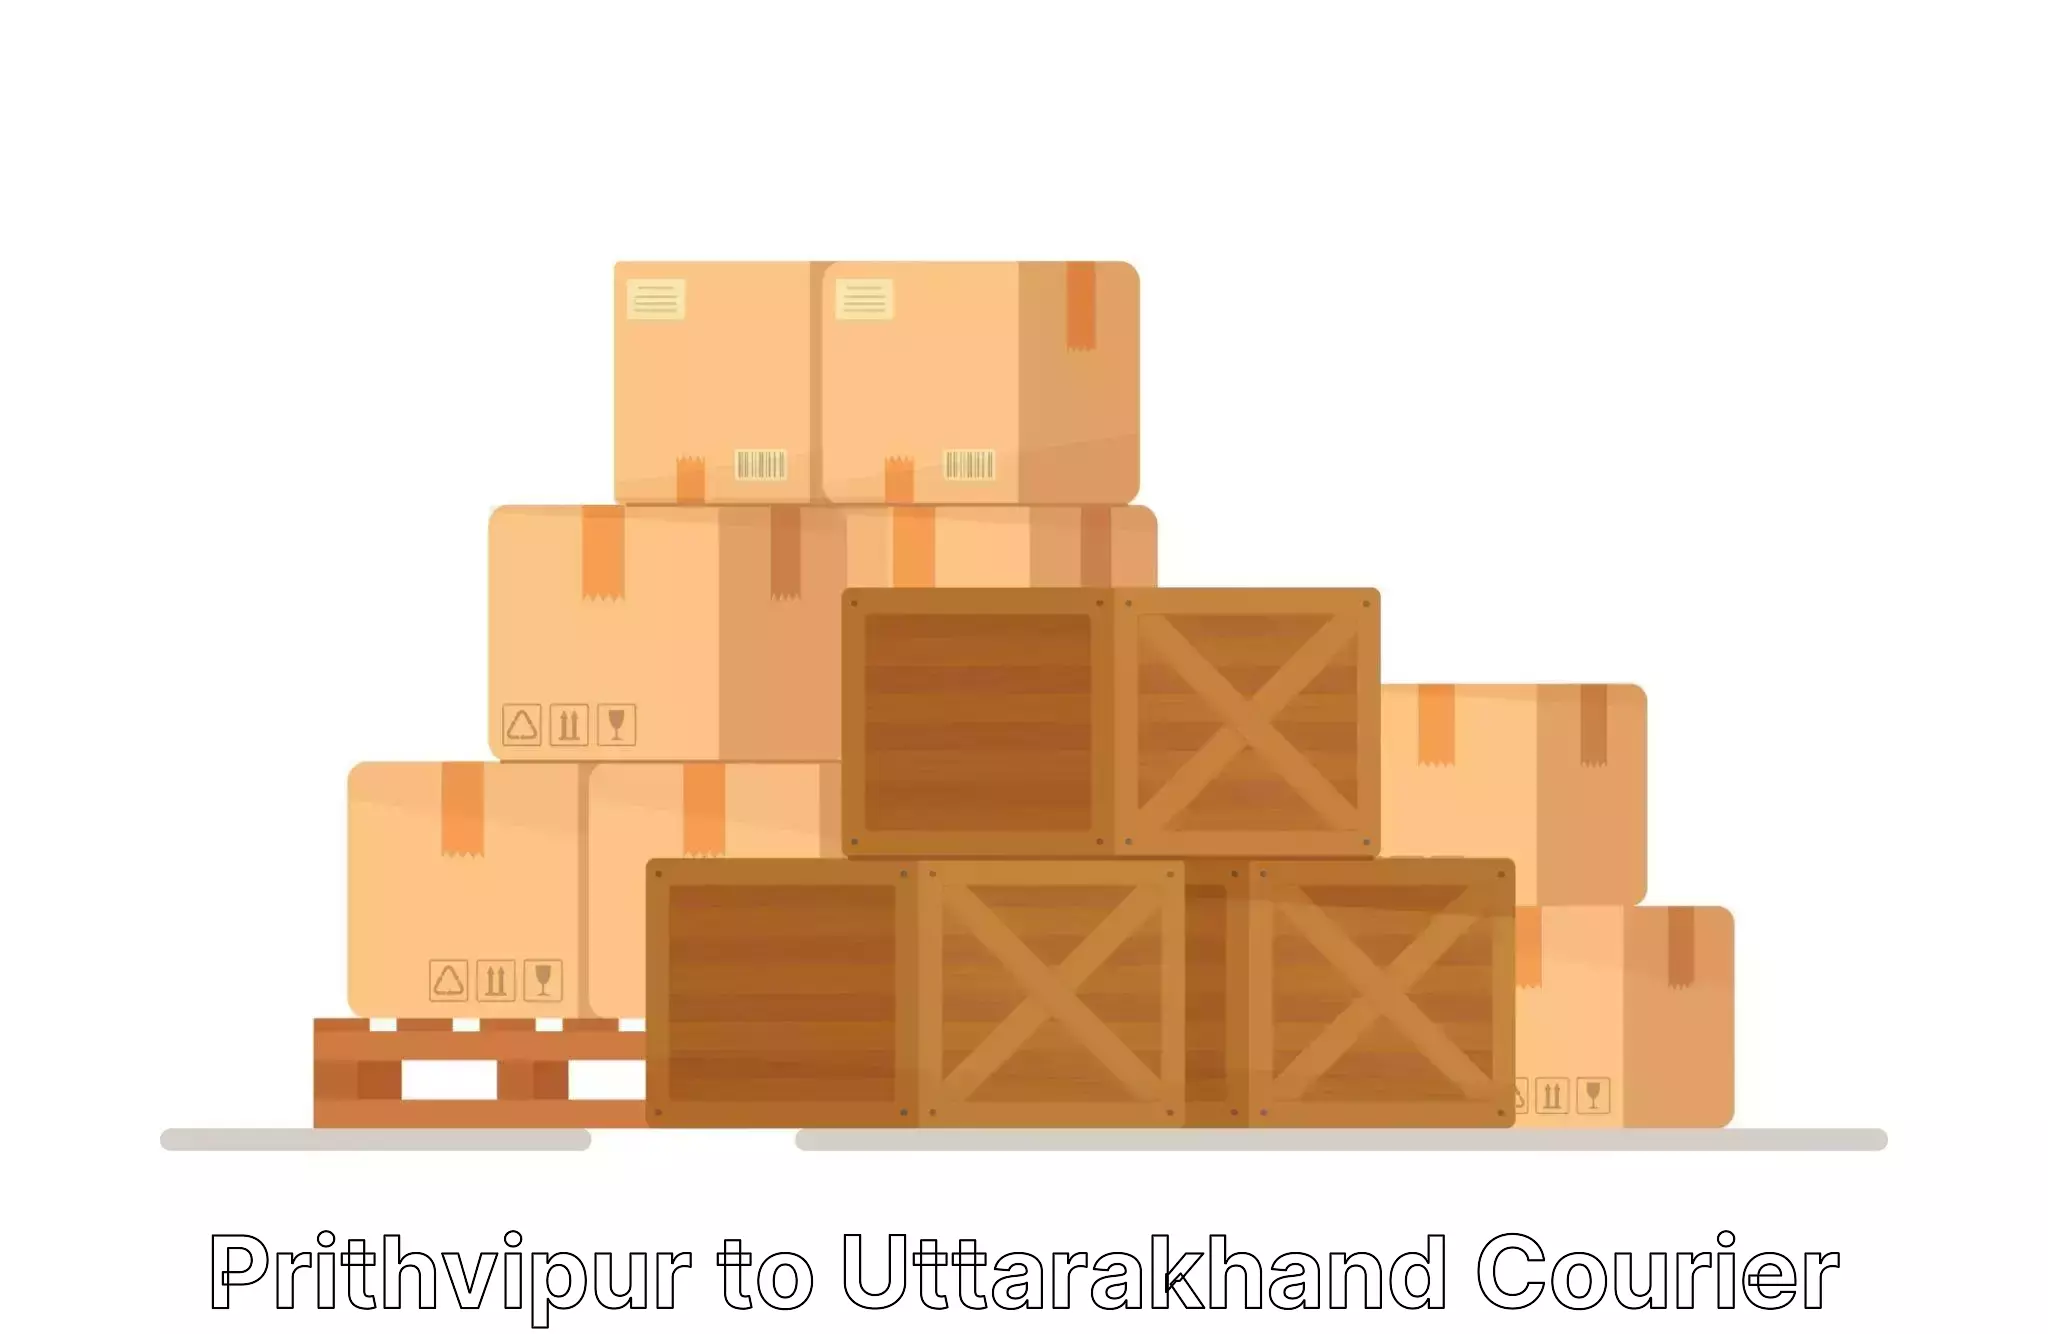 Home goods moving company Prithvipur to Uttarakhand